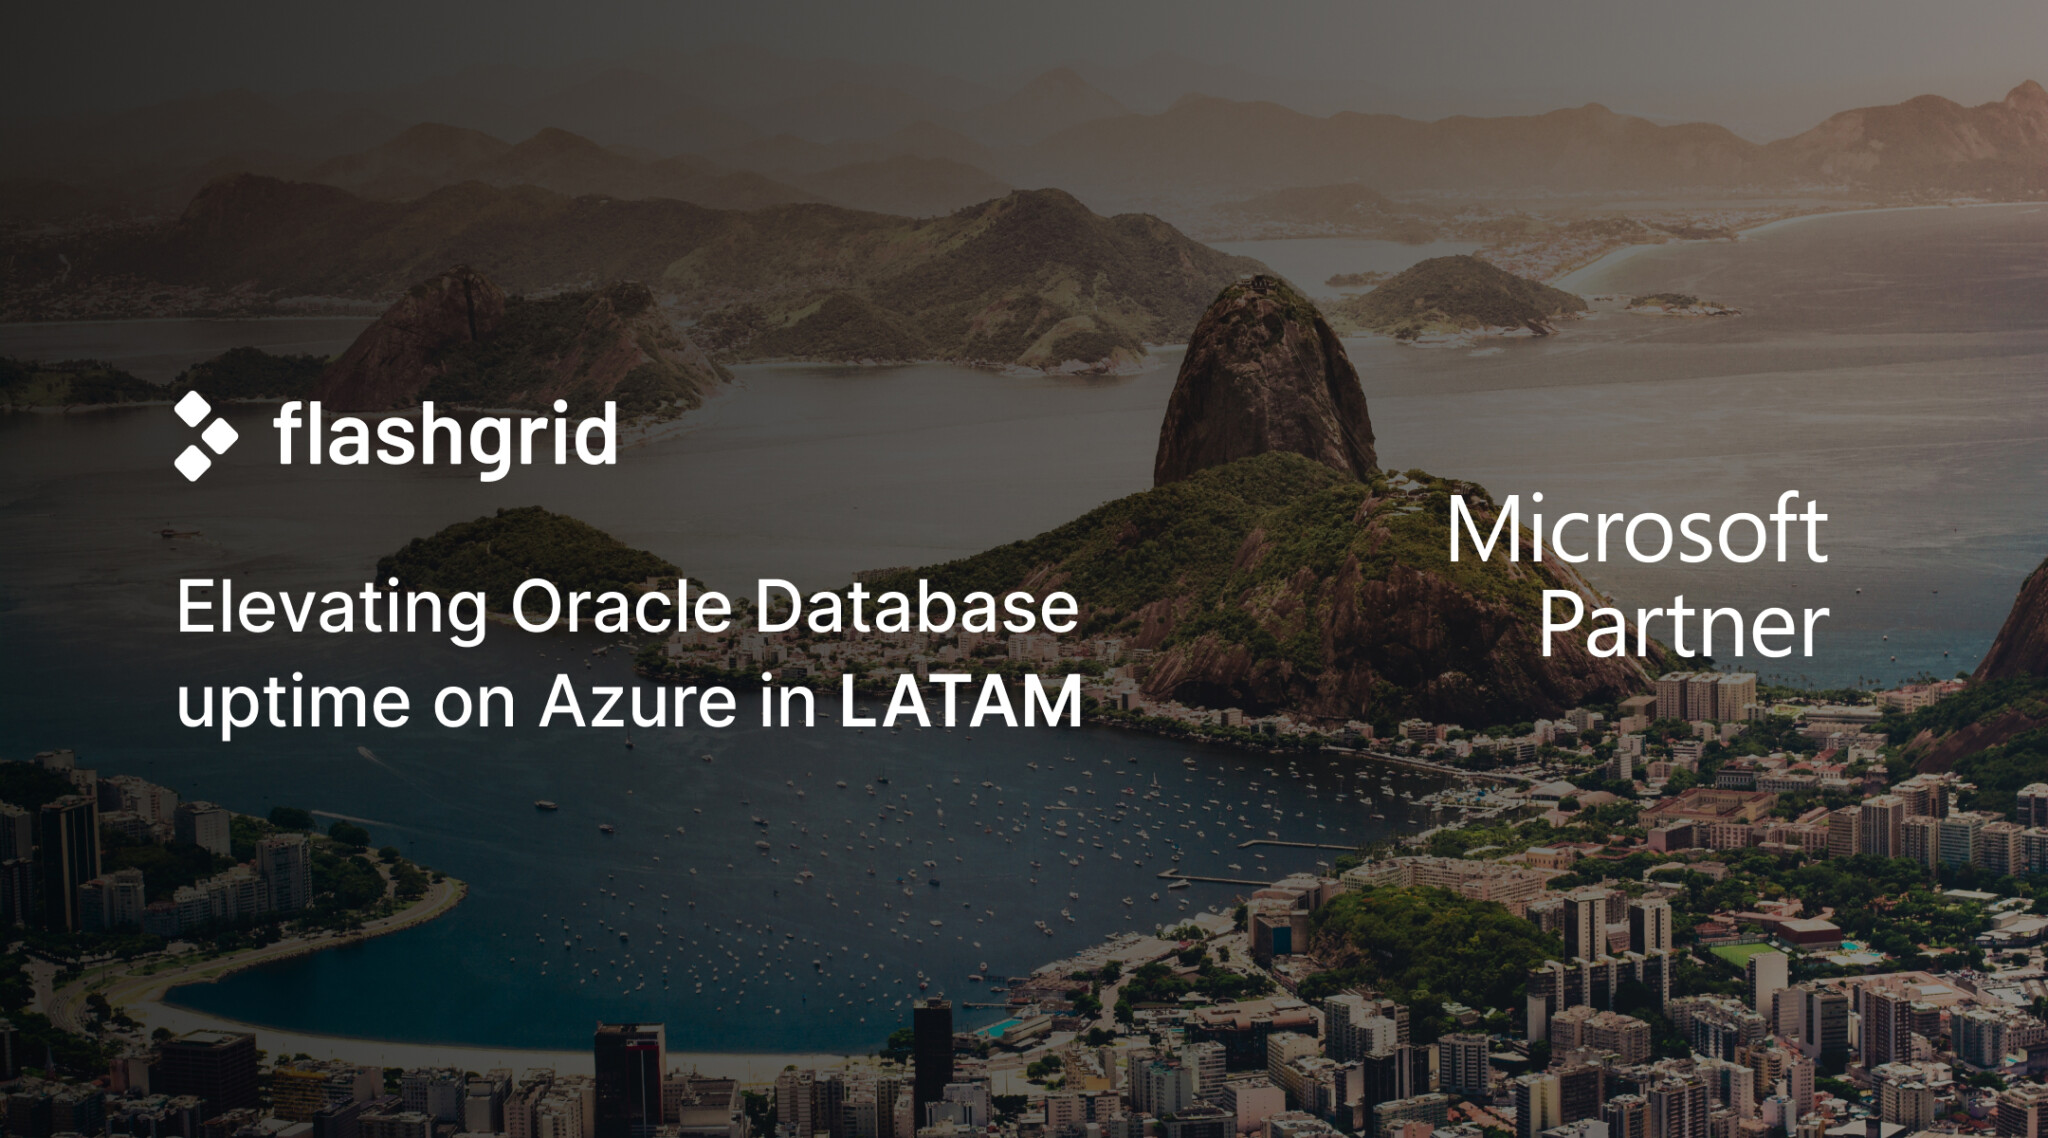 FlashGrid elevating Oracle Database uptime on Azure in LATAM